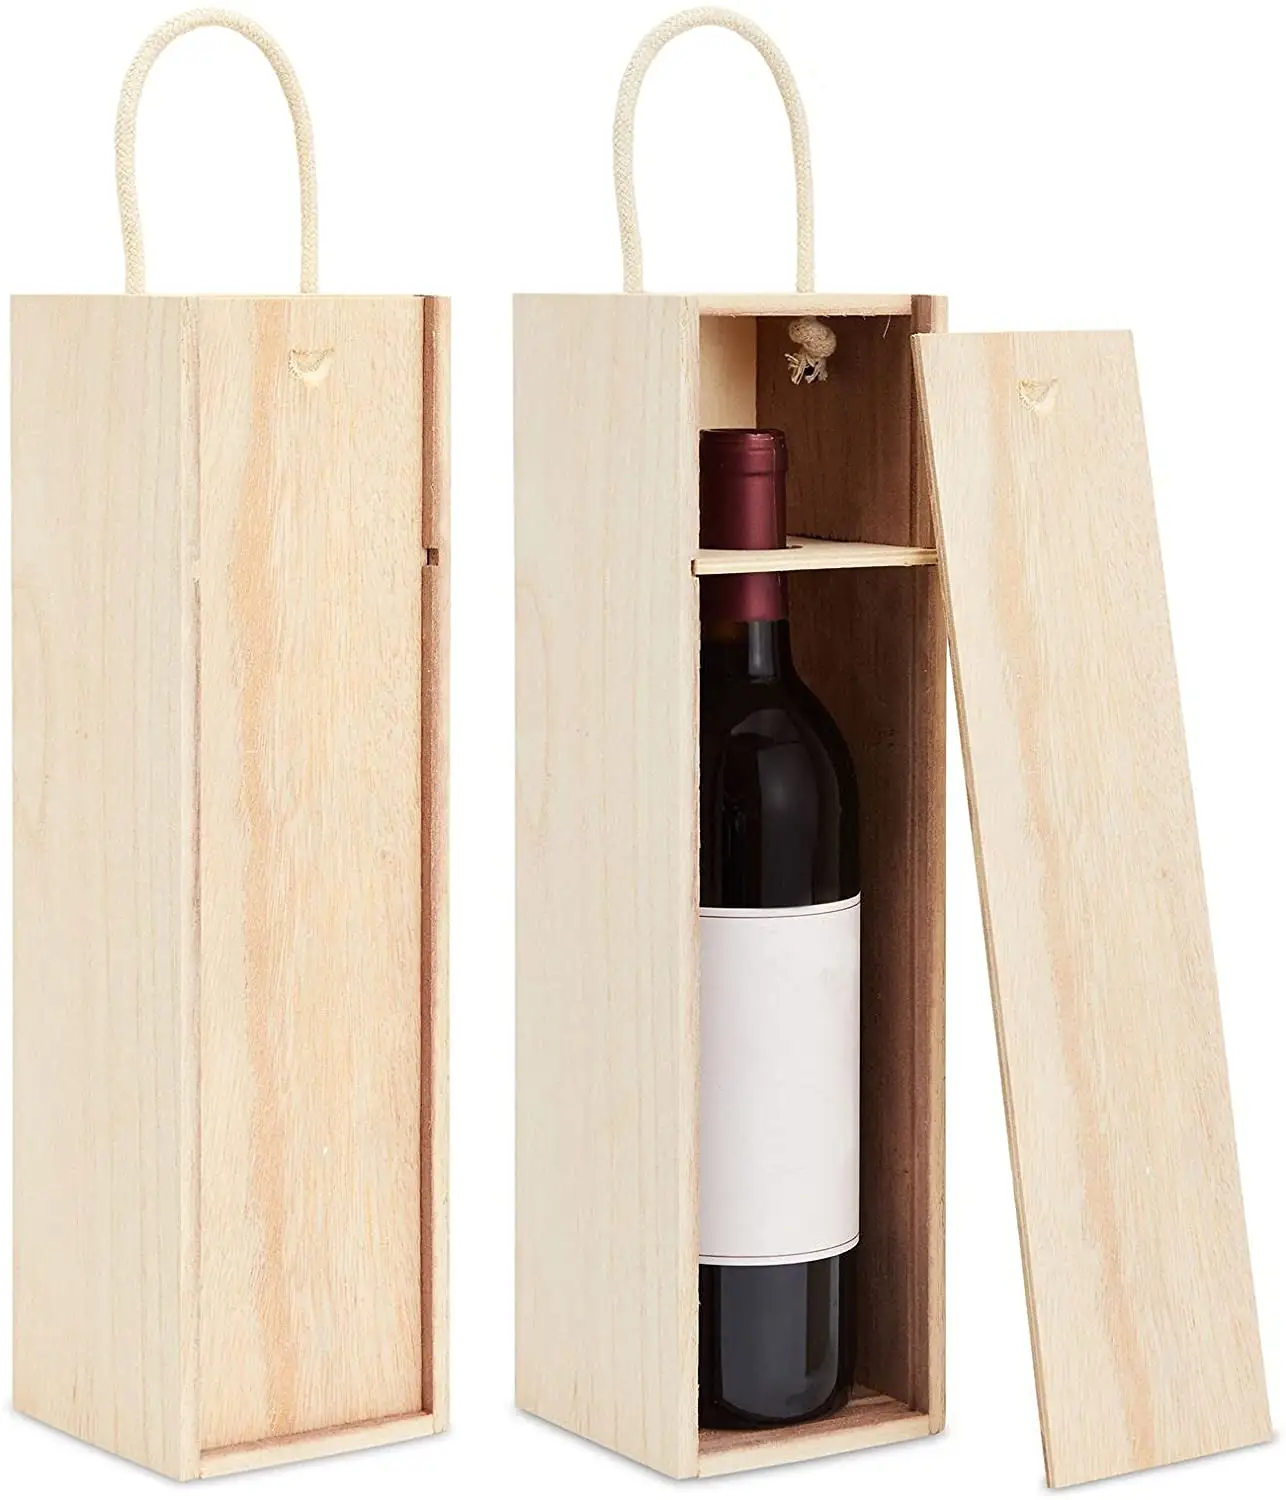 Toptan özelleştirilmiş ahşap şarap kutuları-yüksek kaliteli çevre dostu ahşap kutu lüks şarap, çay ve diğer